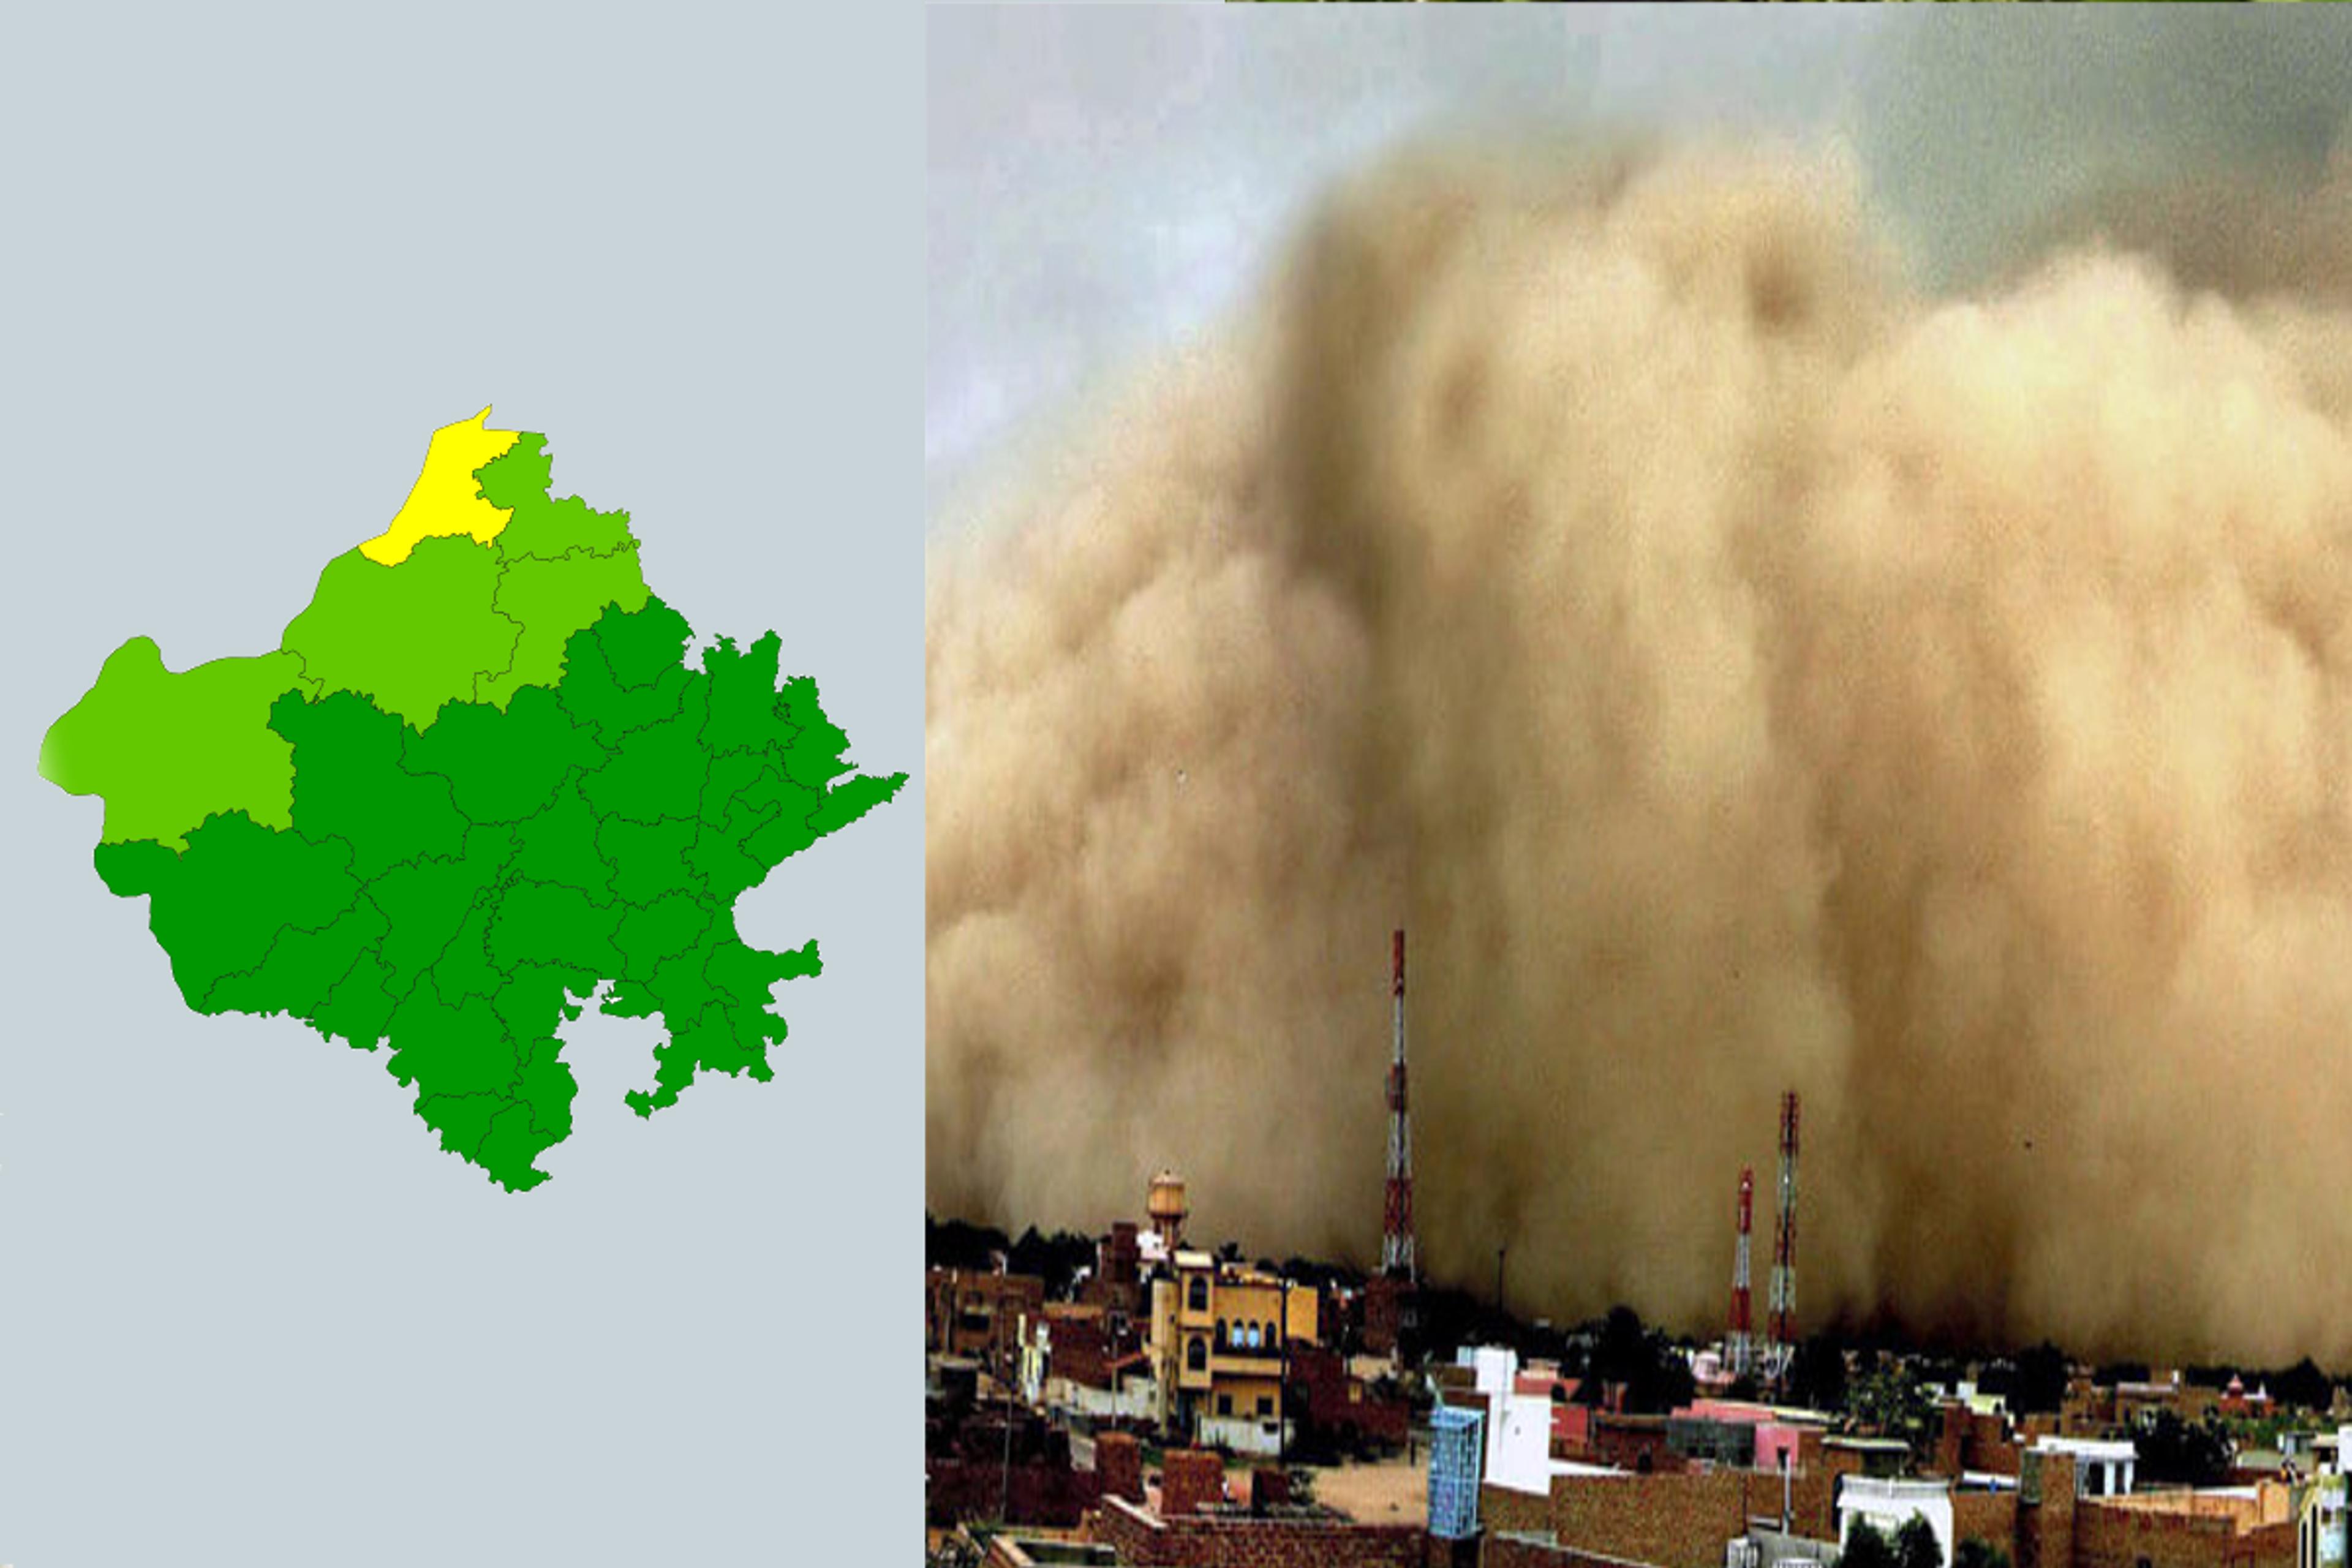 राजस्थान के इन 13 जिलों में हो चुकी है हवा खराब, सिर्फ इन 4 में बची है अच्छी
वायु